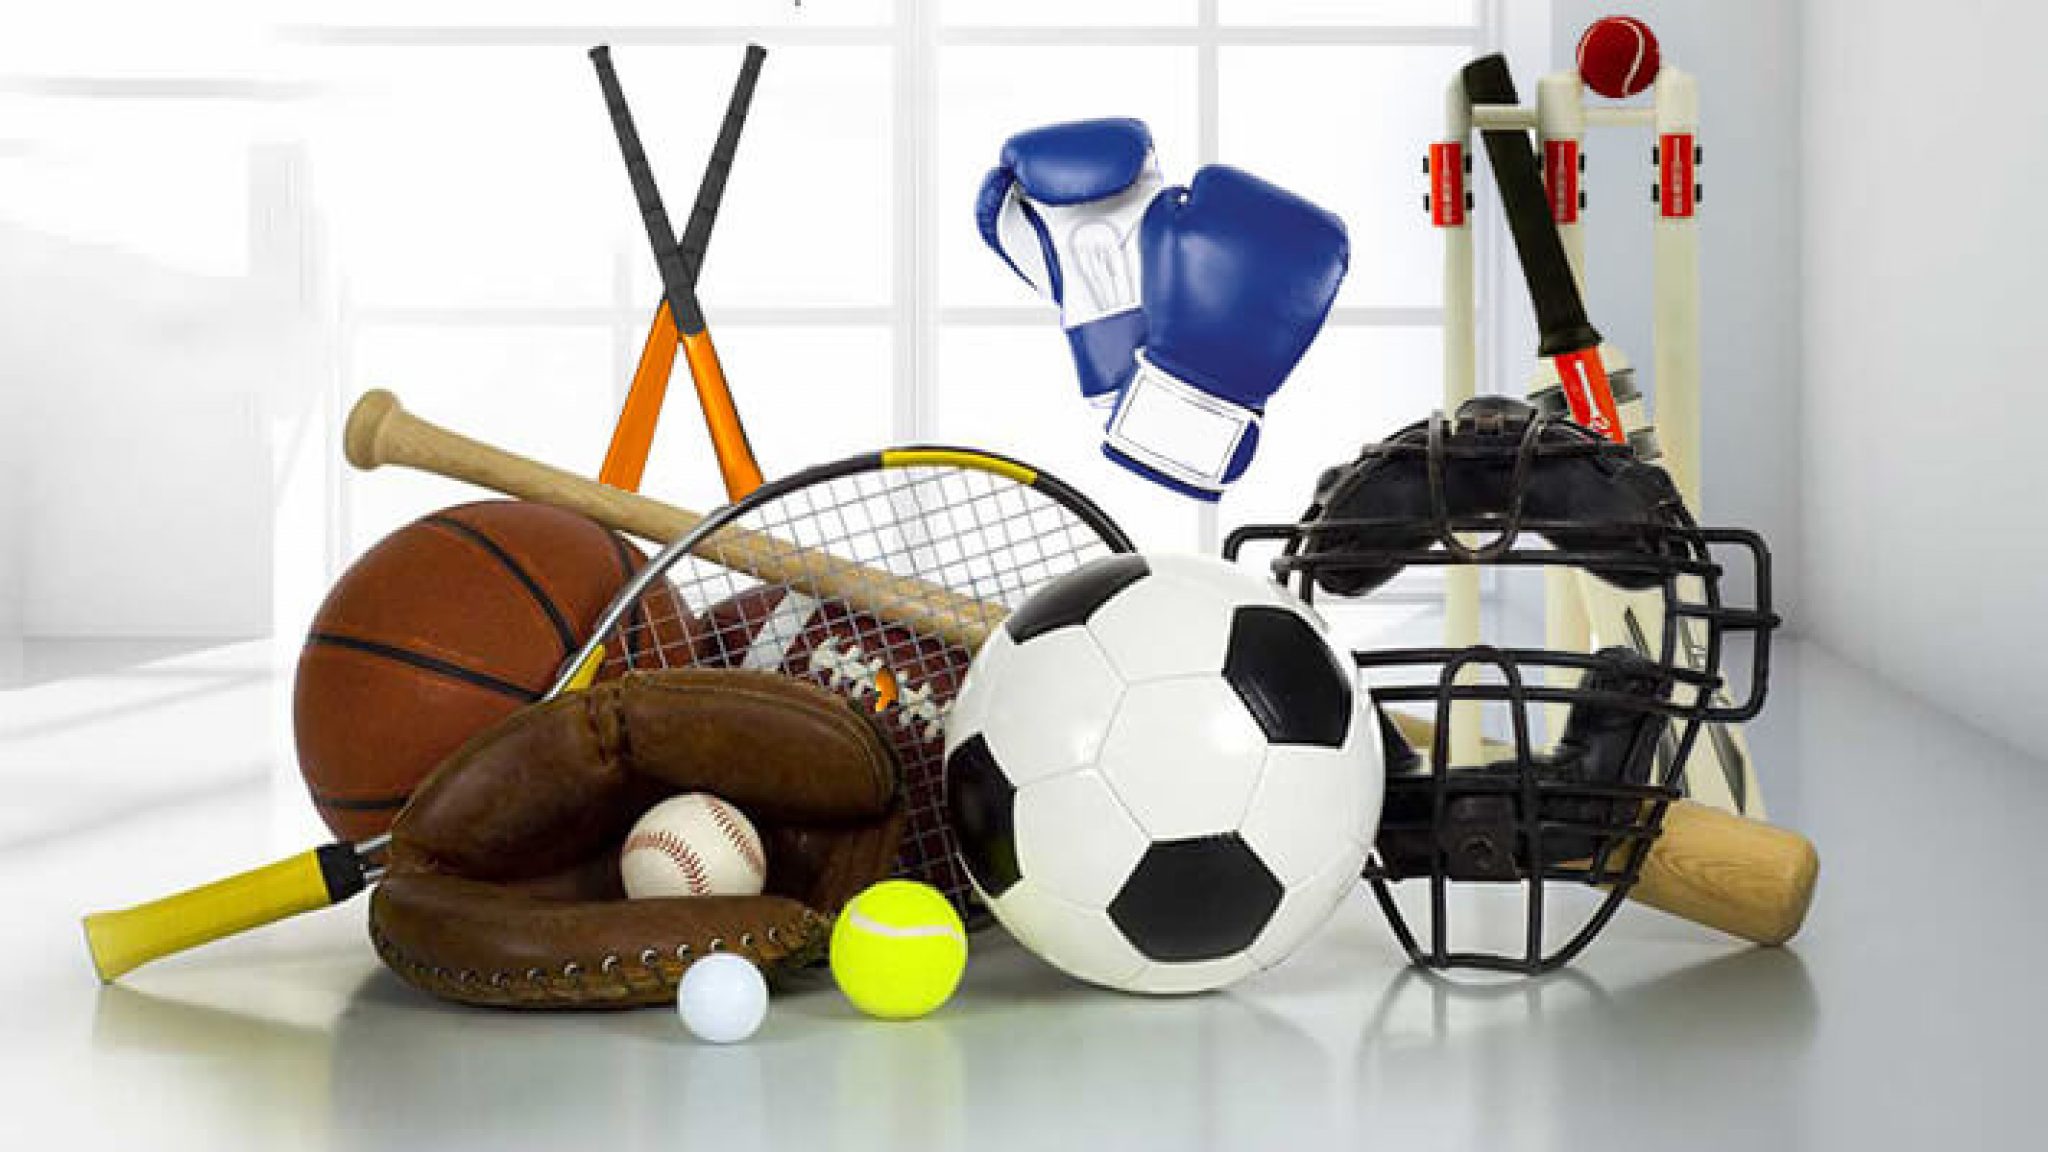 Sports items. Спортивный инвентарь. Спортивный инвентарь для детей. Спортивное оборудование и инвентарь. Спортивное снаряжение.